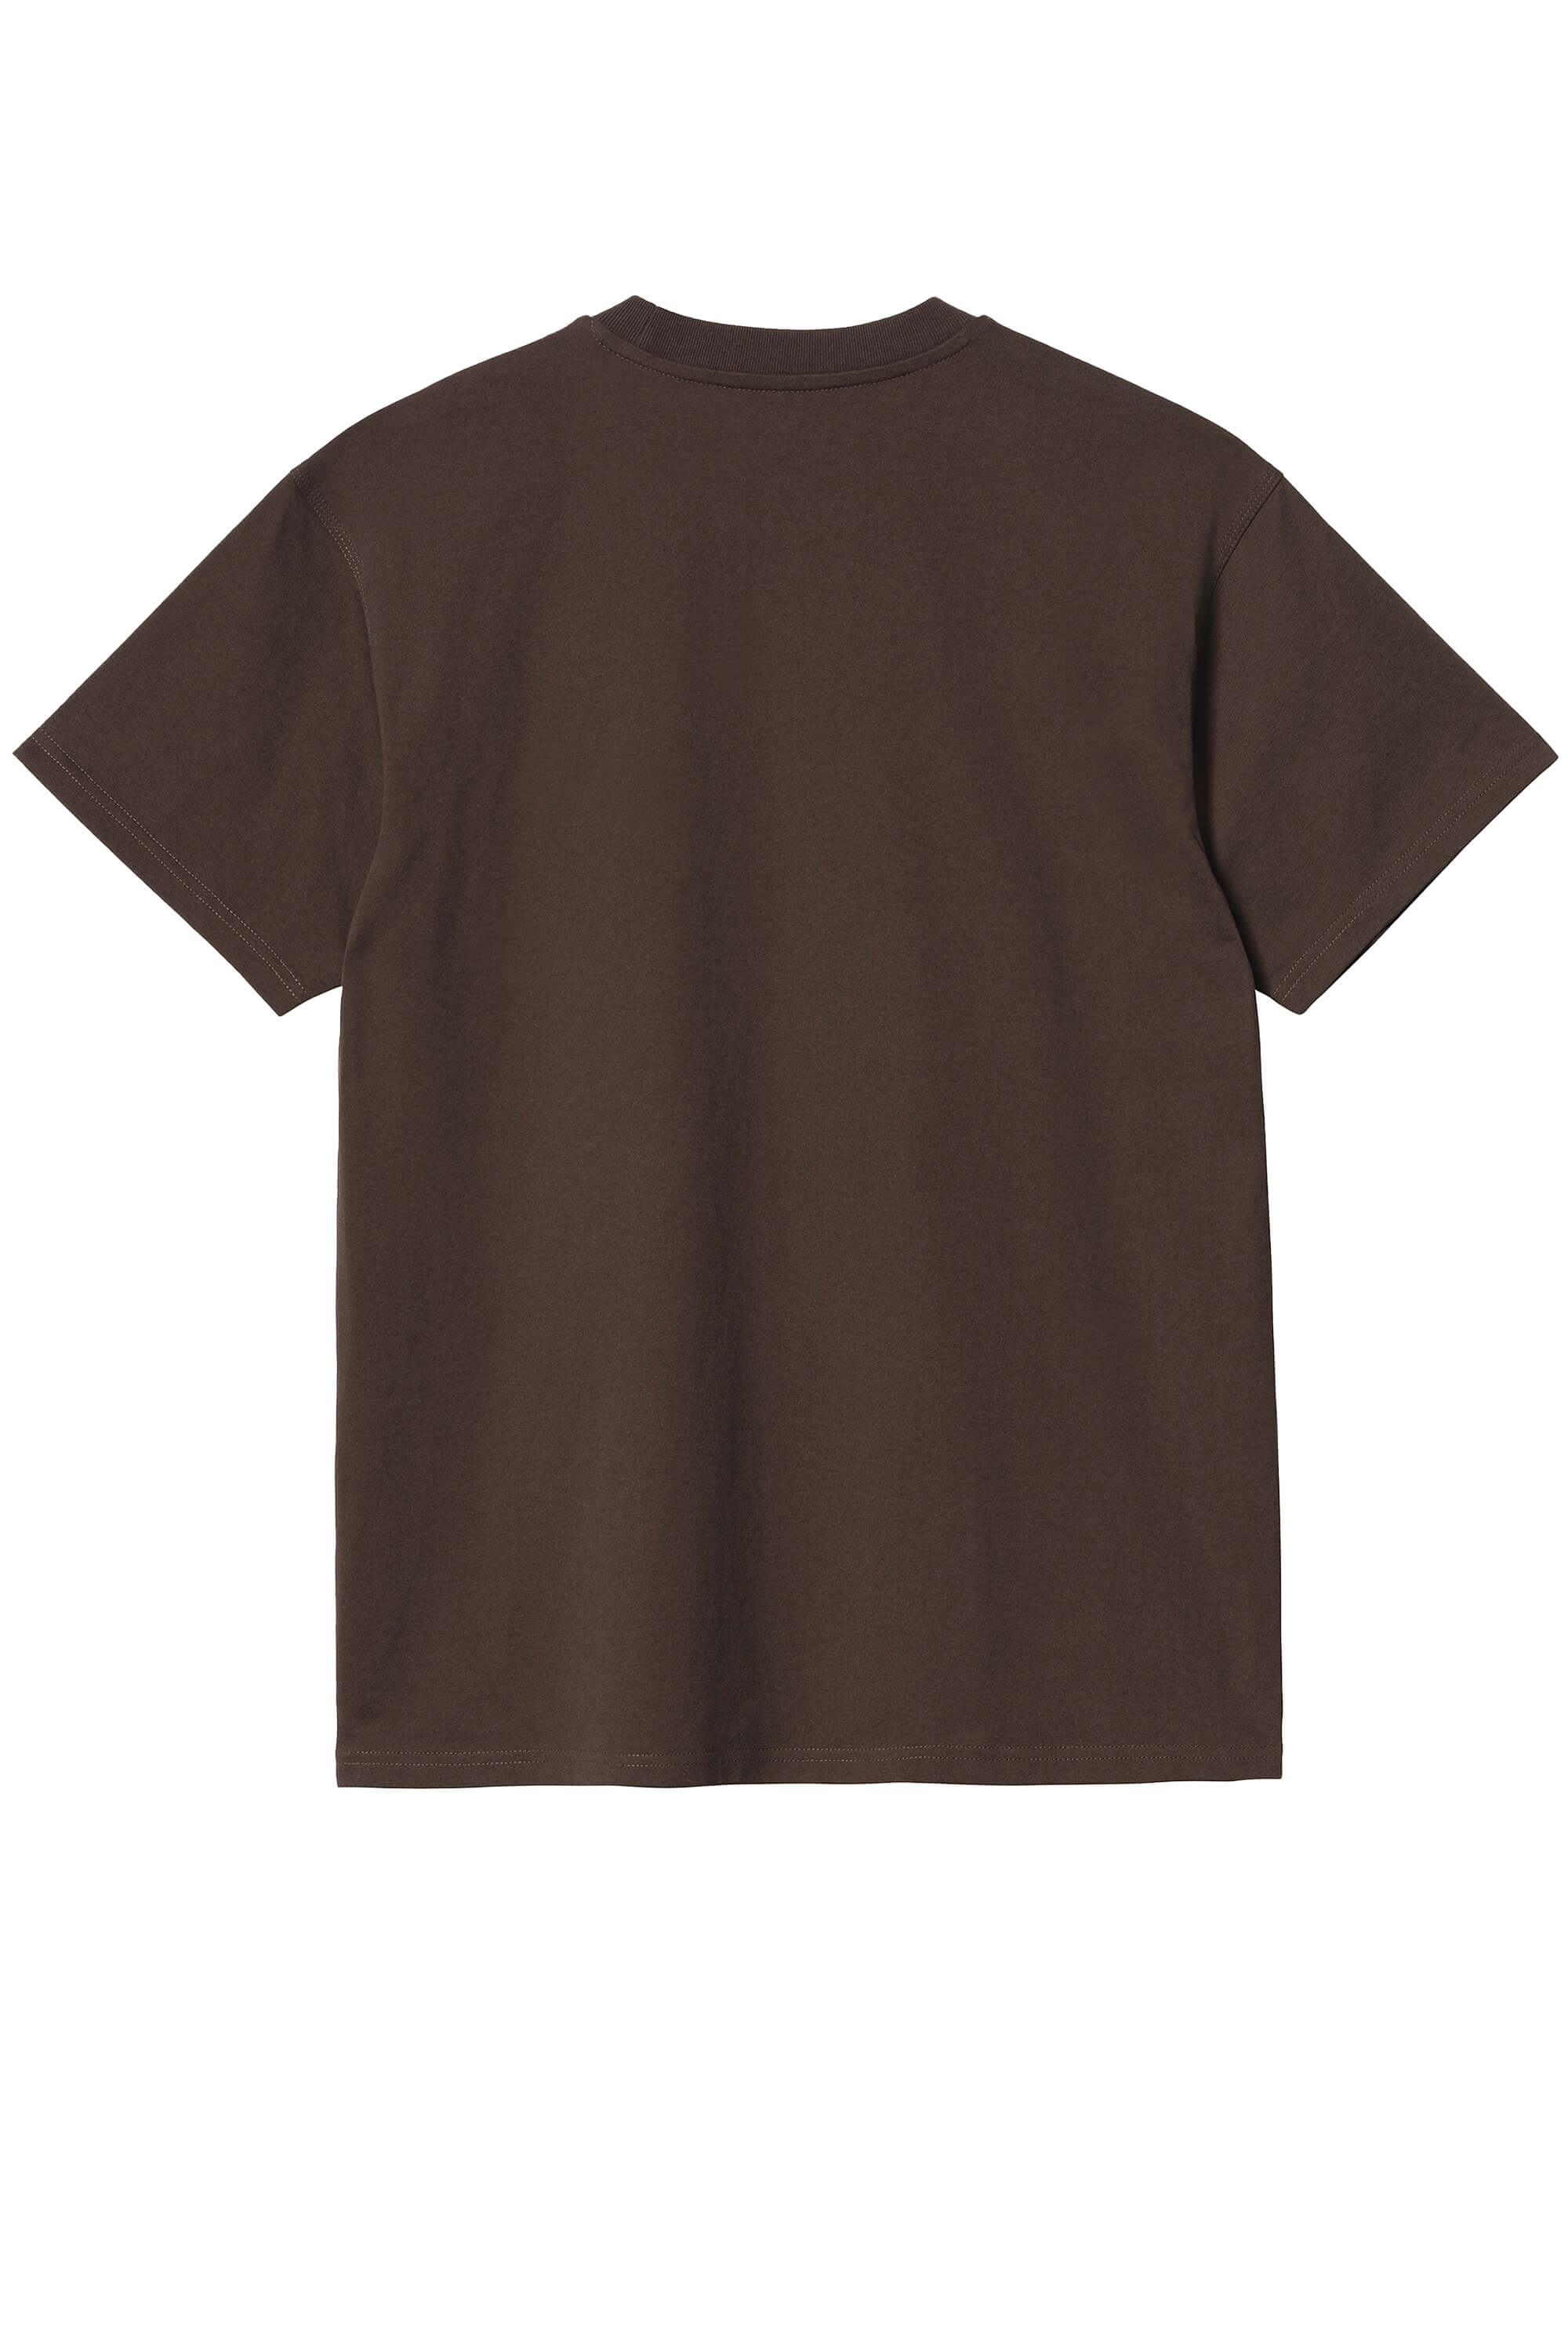 T-shirt ricamata in cotone marrone scuro